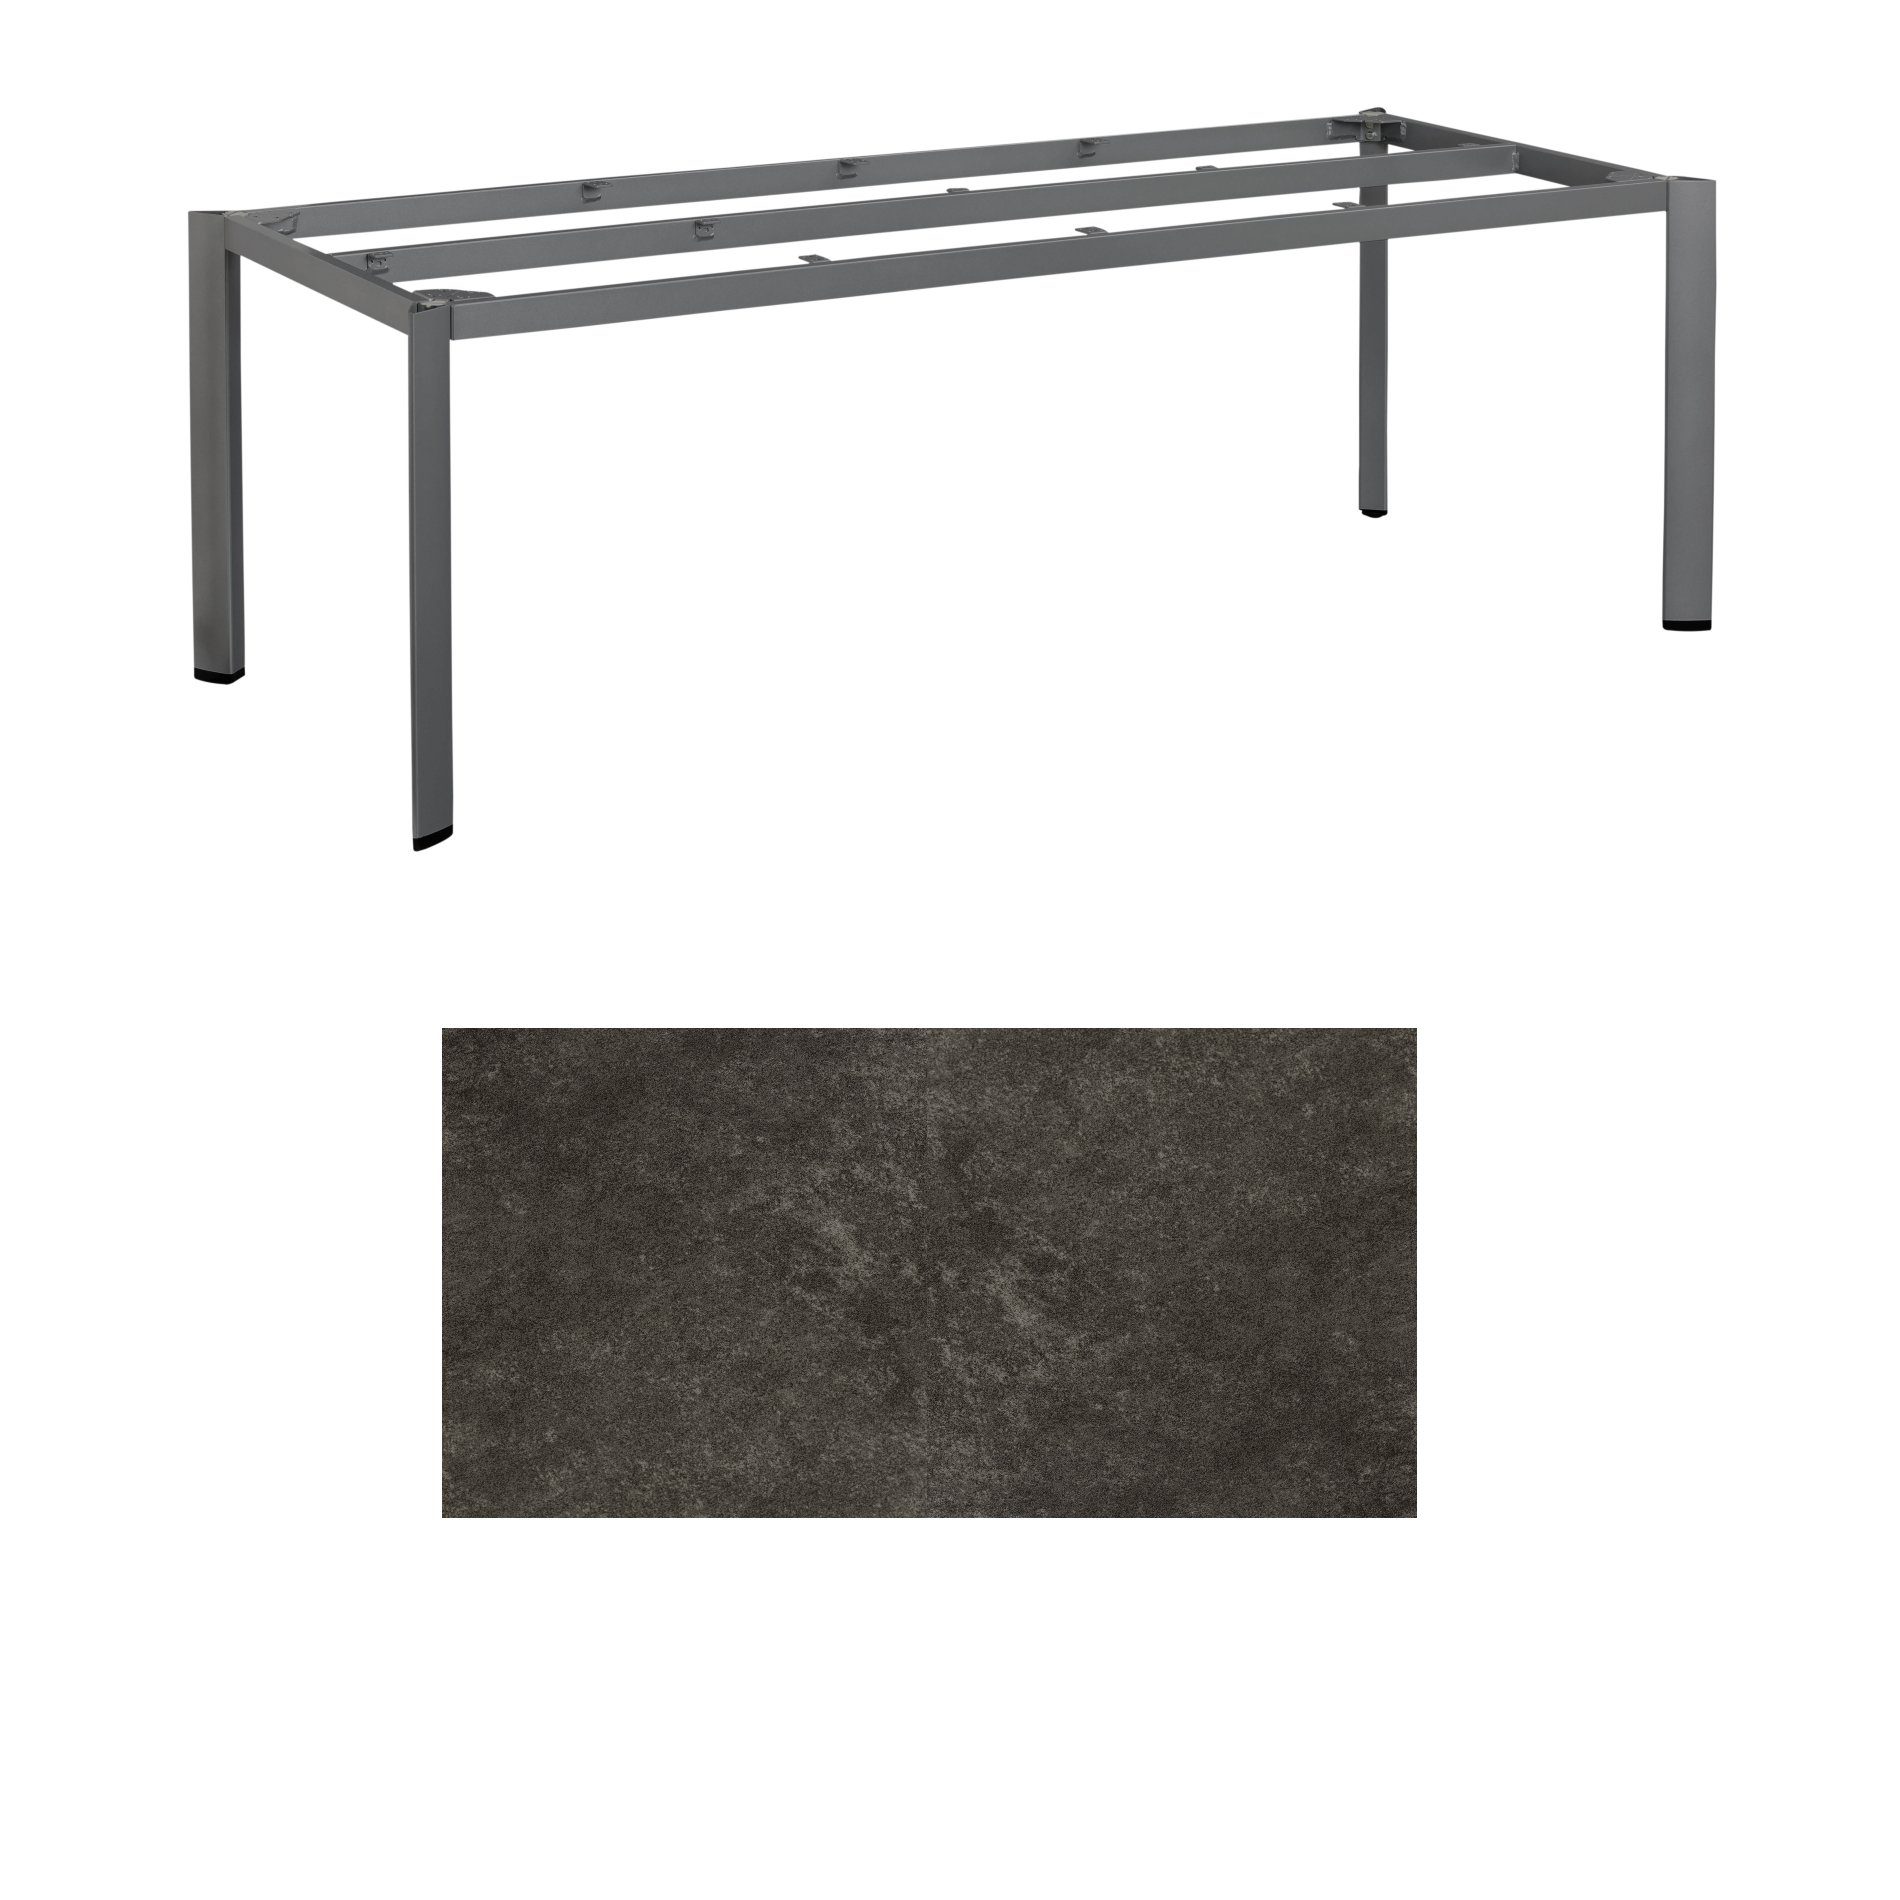 Kettler Gartentisch, Tischgestell 220x95cm "Edge", Aluminium anthrazit, mit Tischplatte Keramik anthrazit